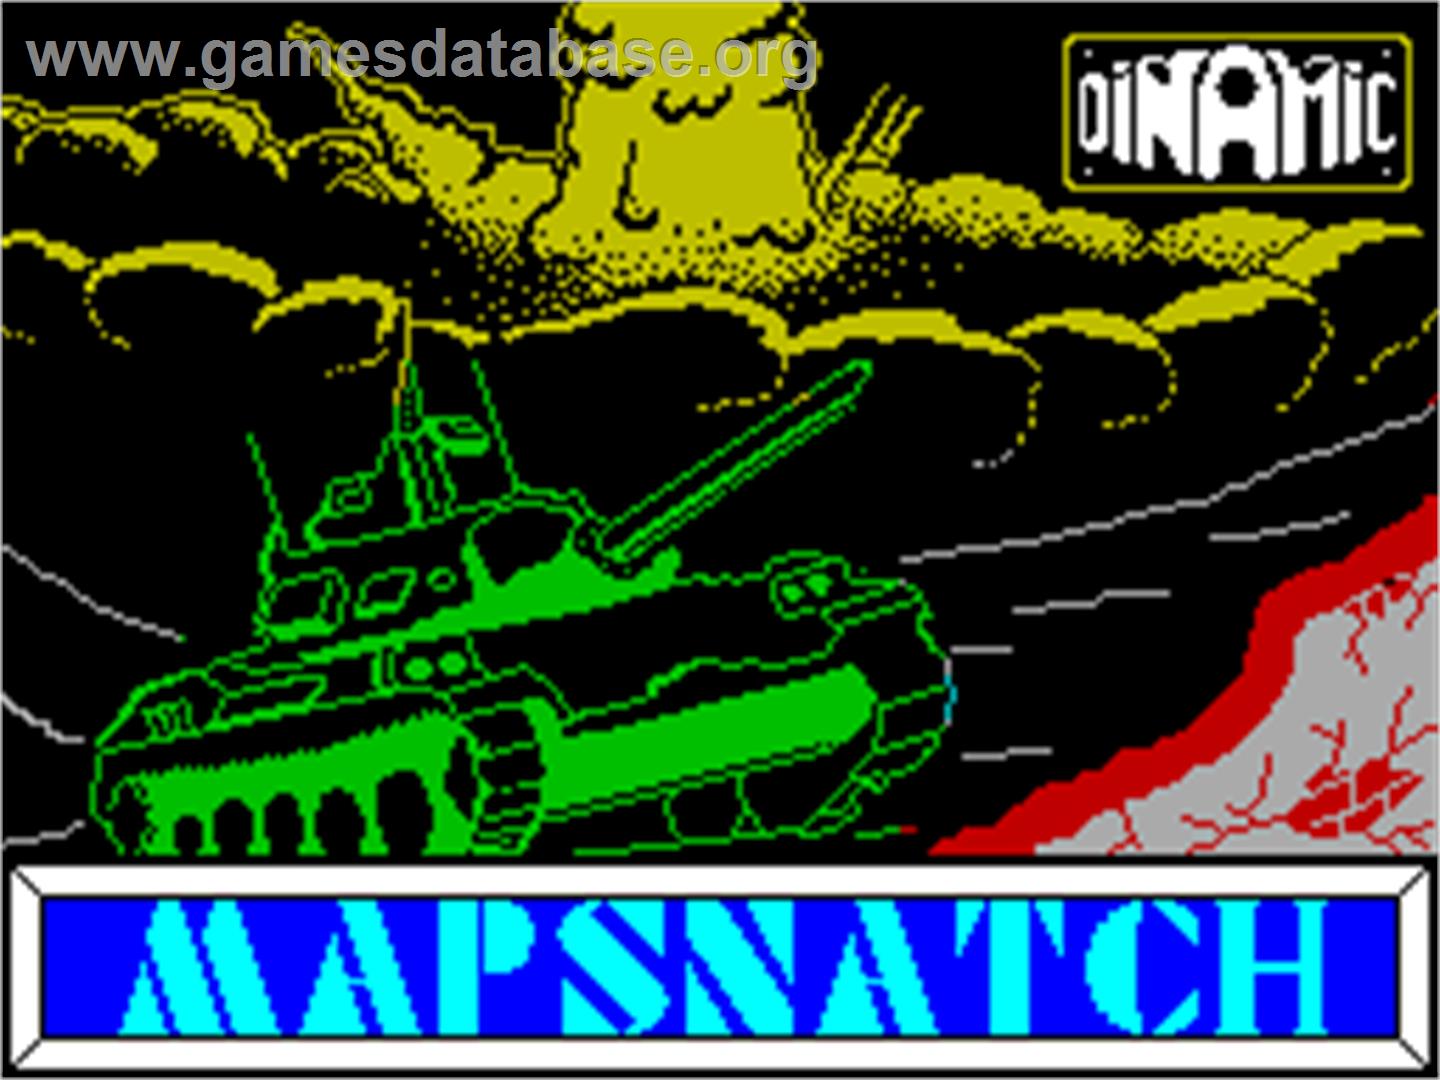 Mapsnatch - Sinclair ZX Spectrum - Artwork - Title Screen